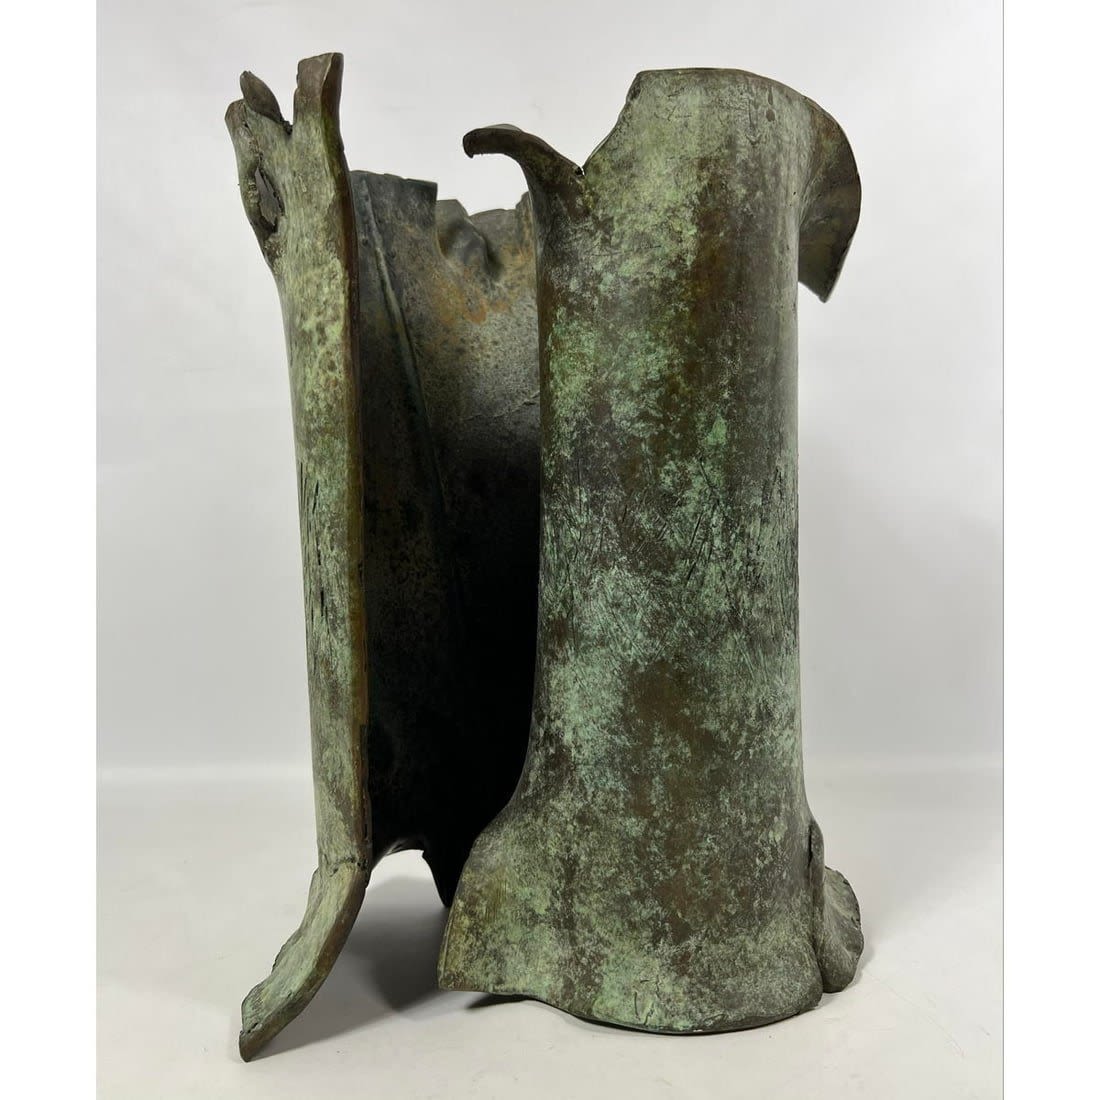 CALABOYIAS Abstract Bronze Sculpture  3629a6